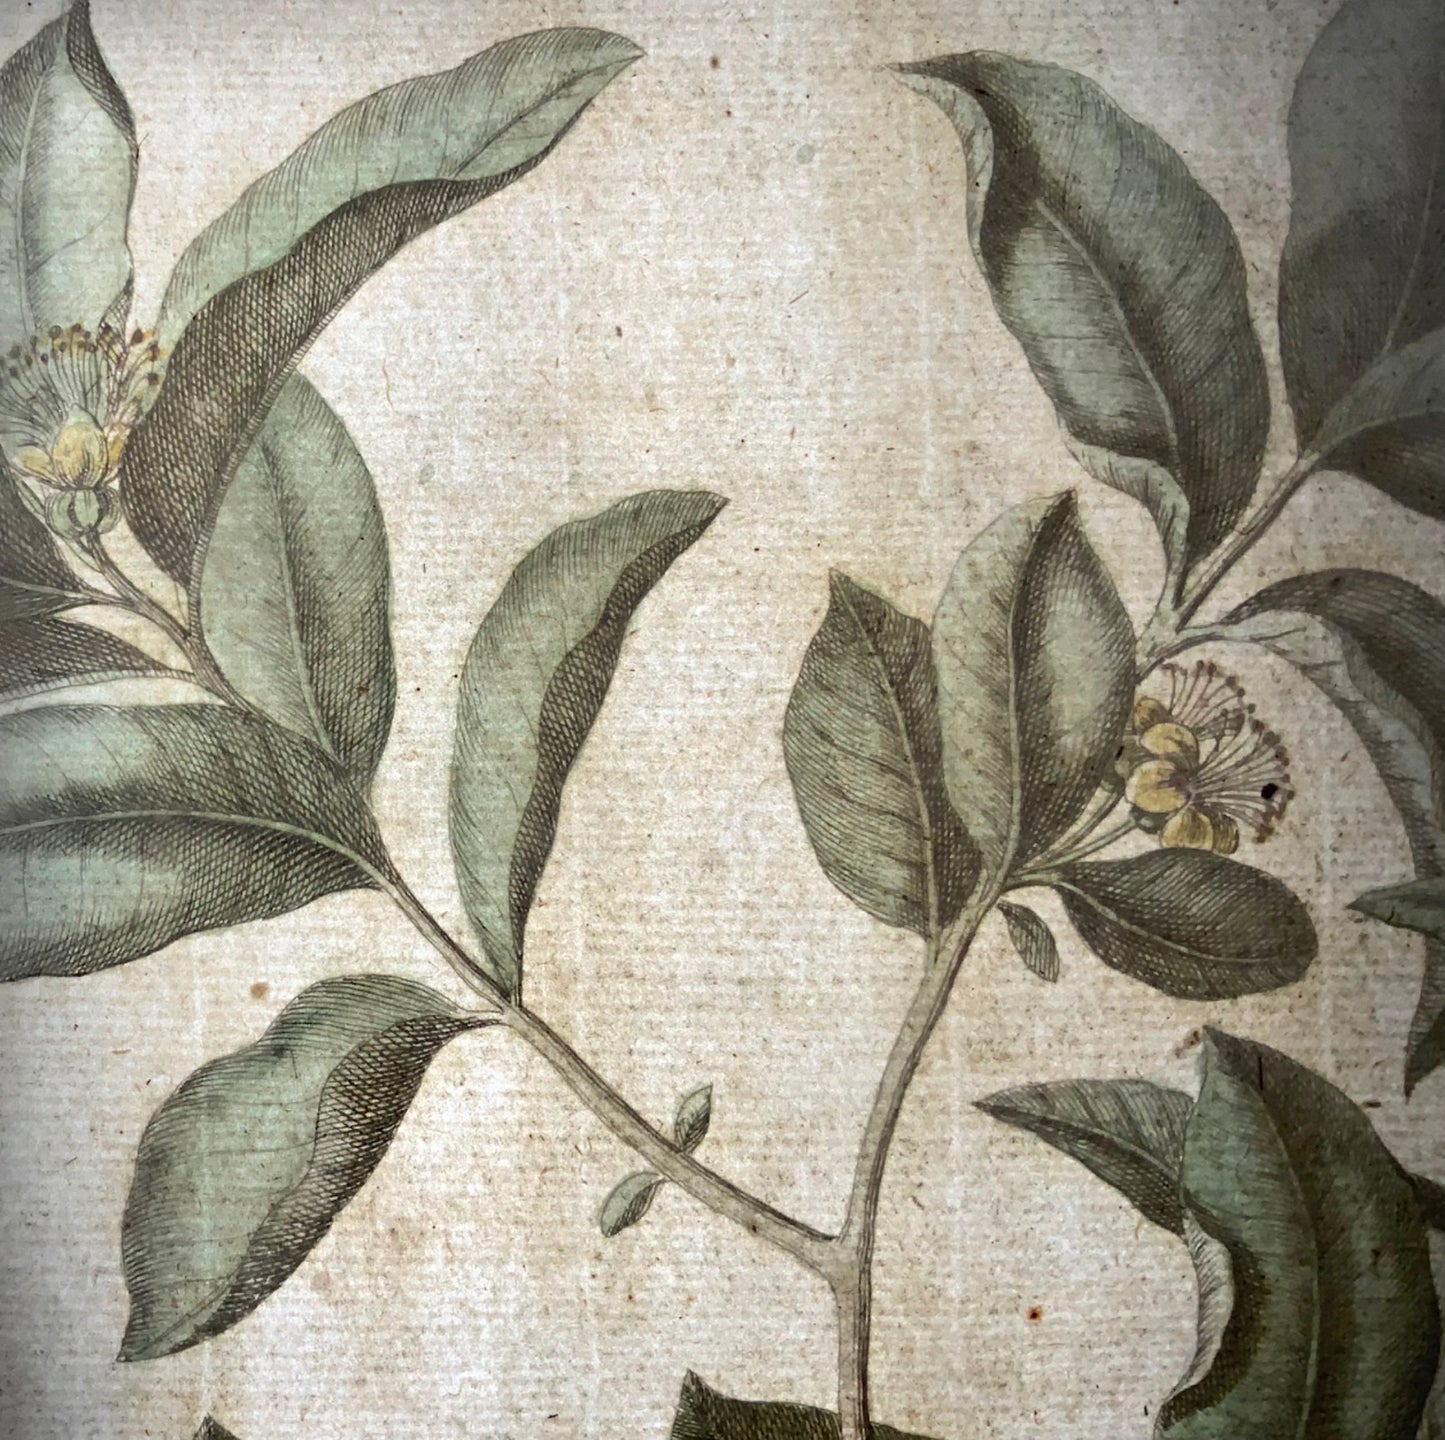 1741 Guava, fruit, Rumpf, Herbarium Amboinense, Indonesia, hand colour, folio